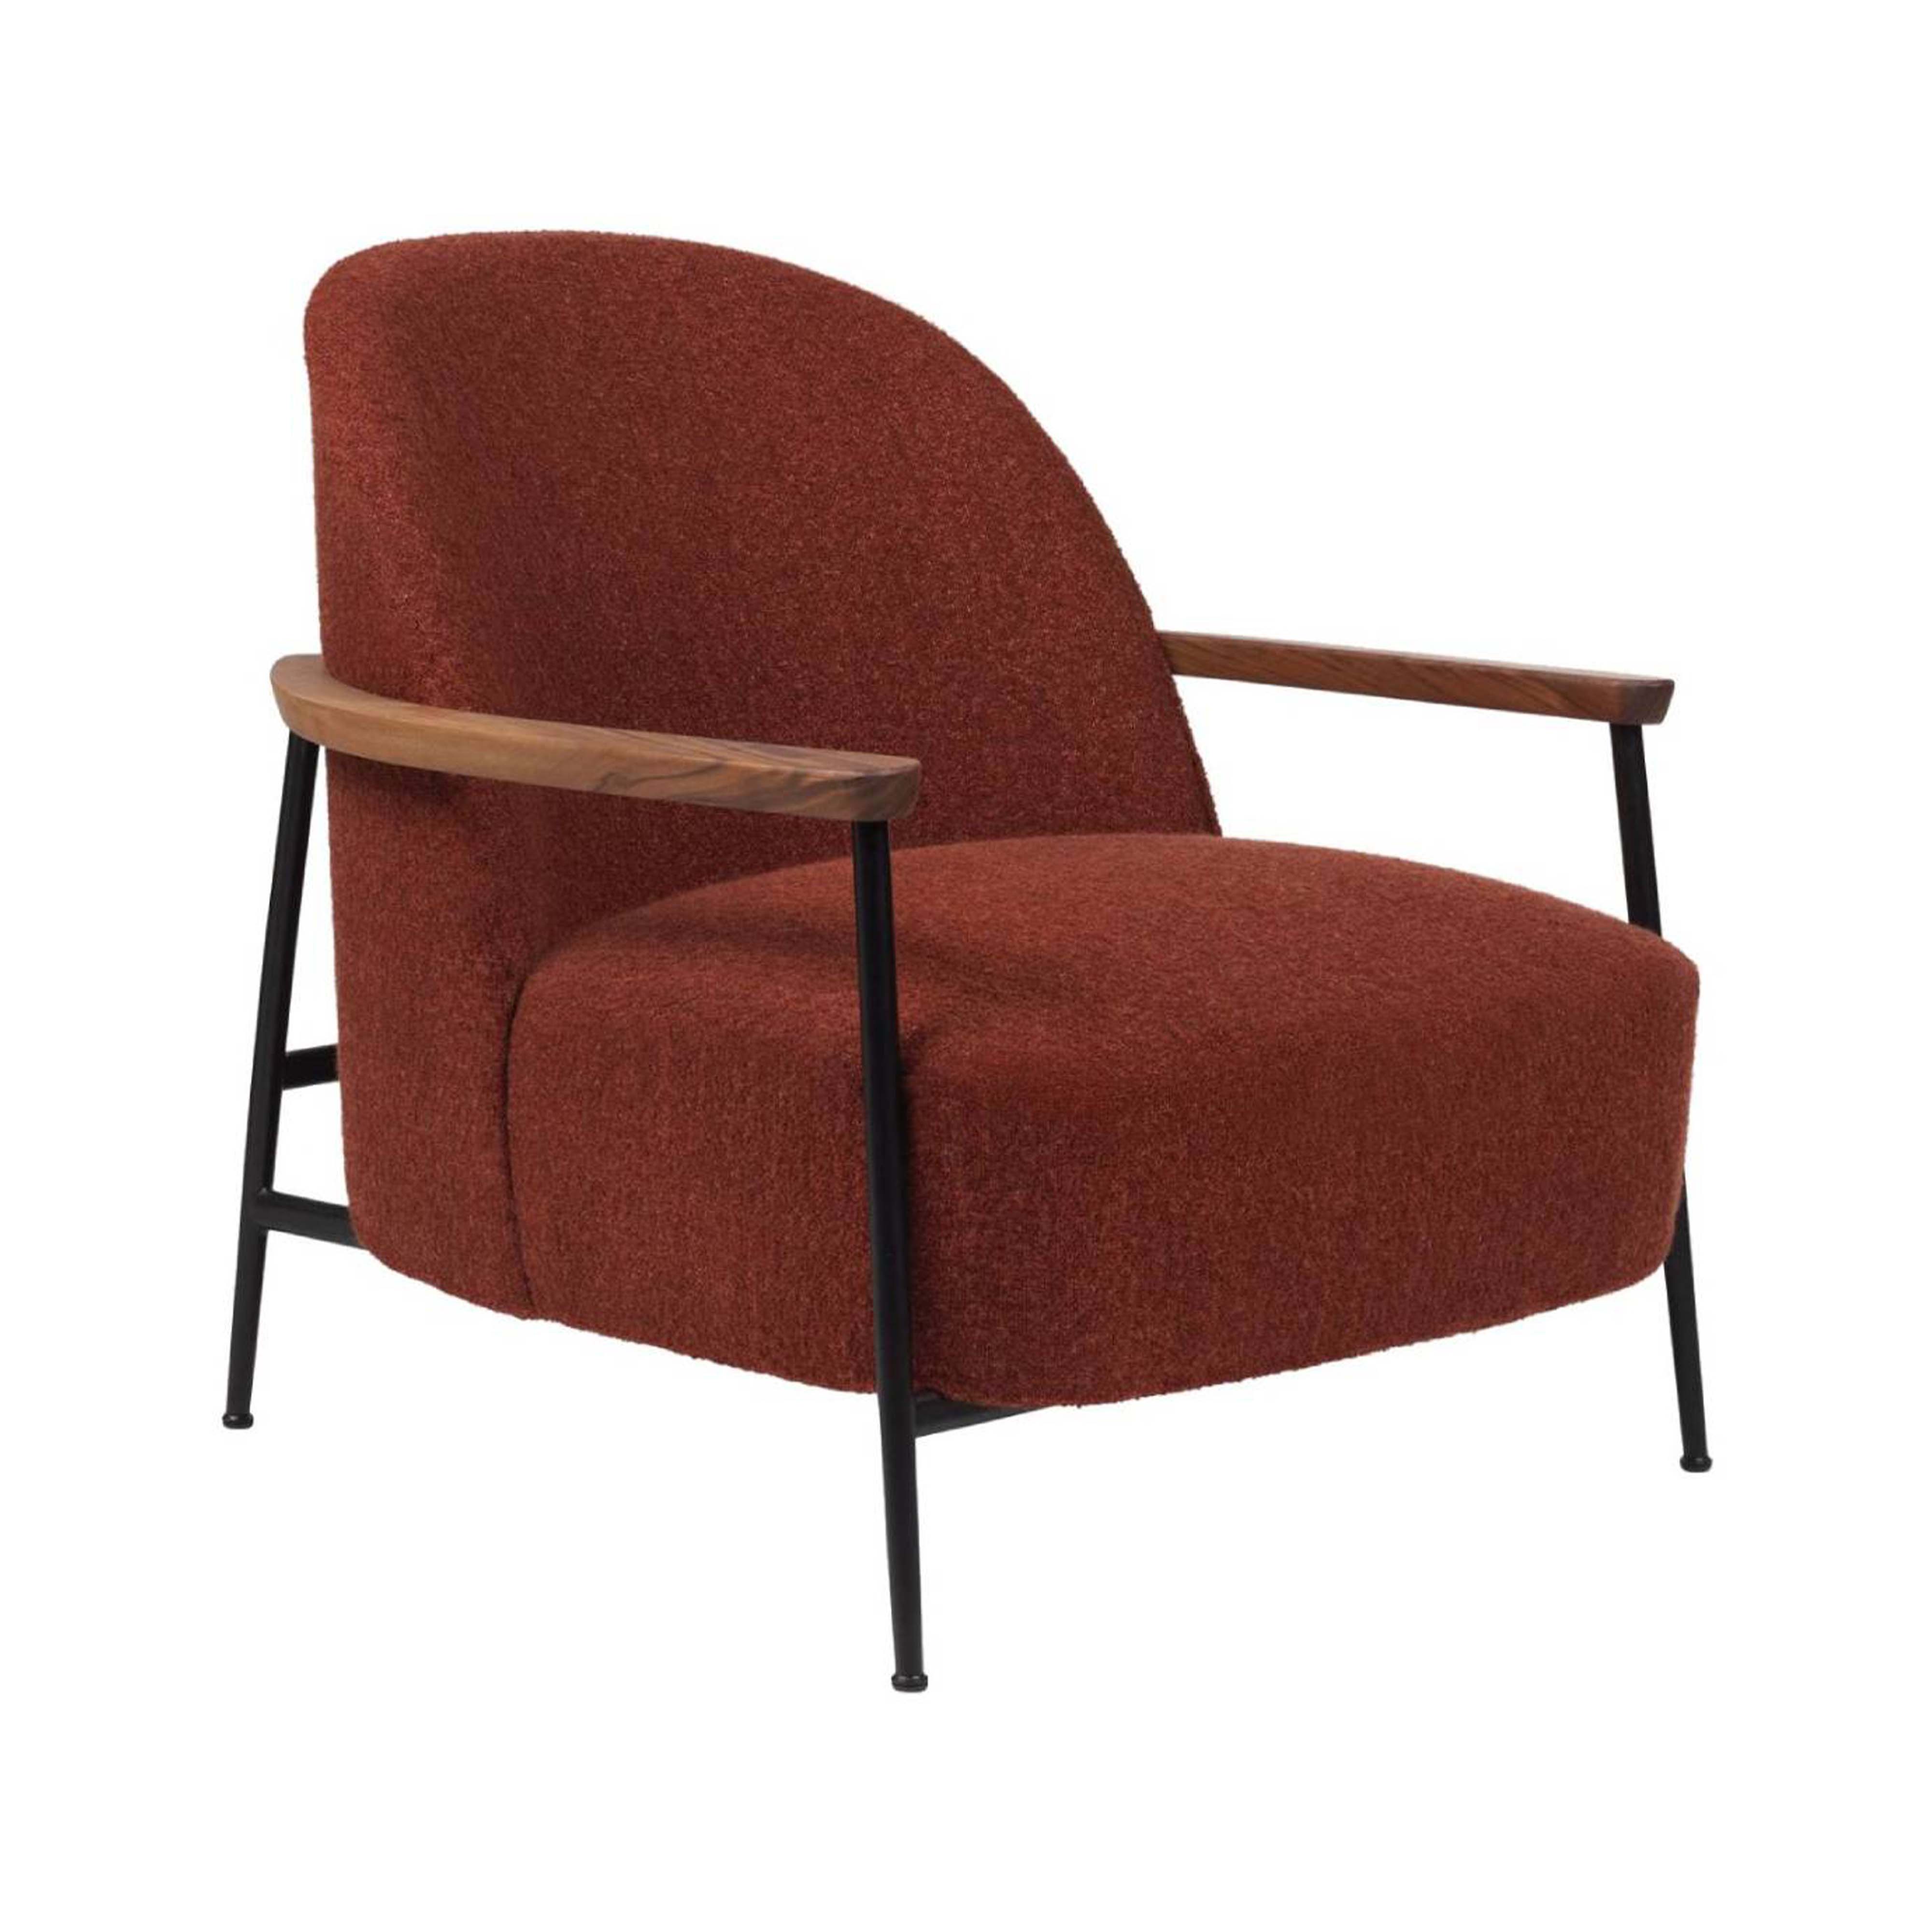 Sejour Lounge Chair with Armrest: Black Matt + Oak